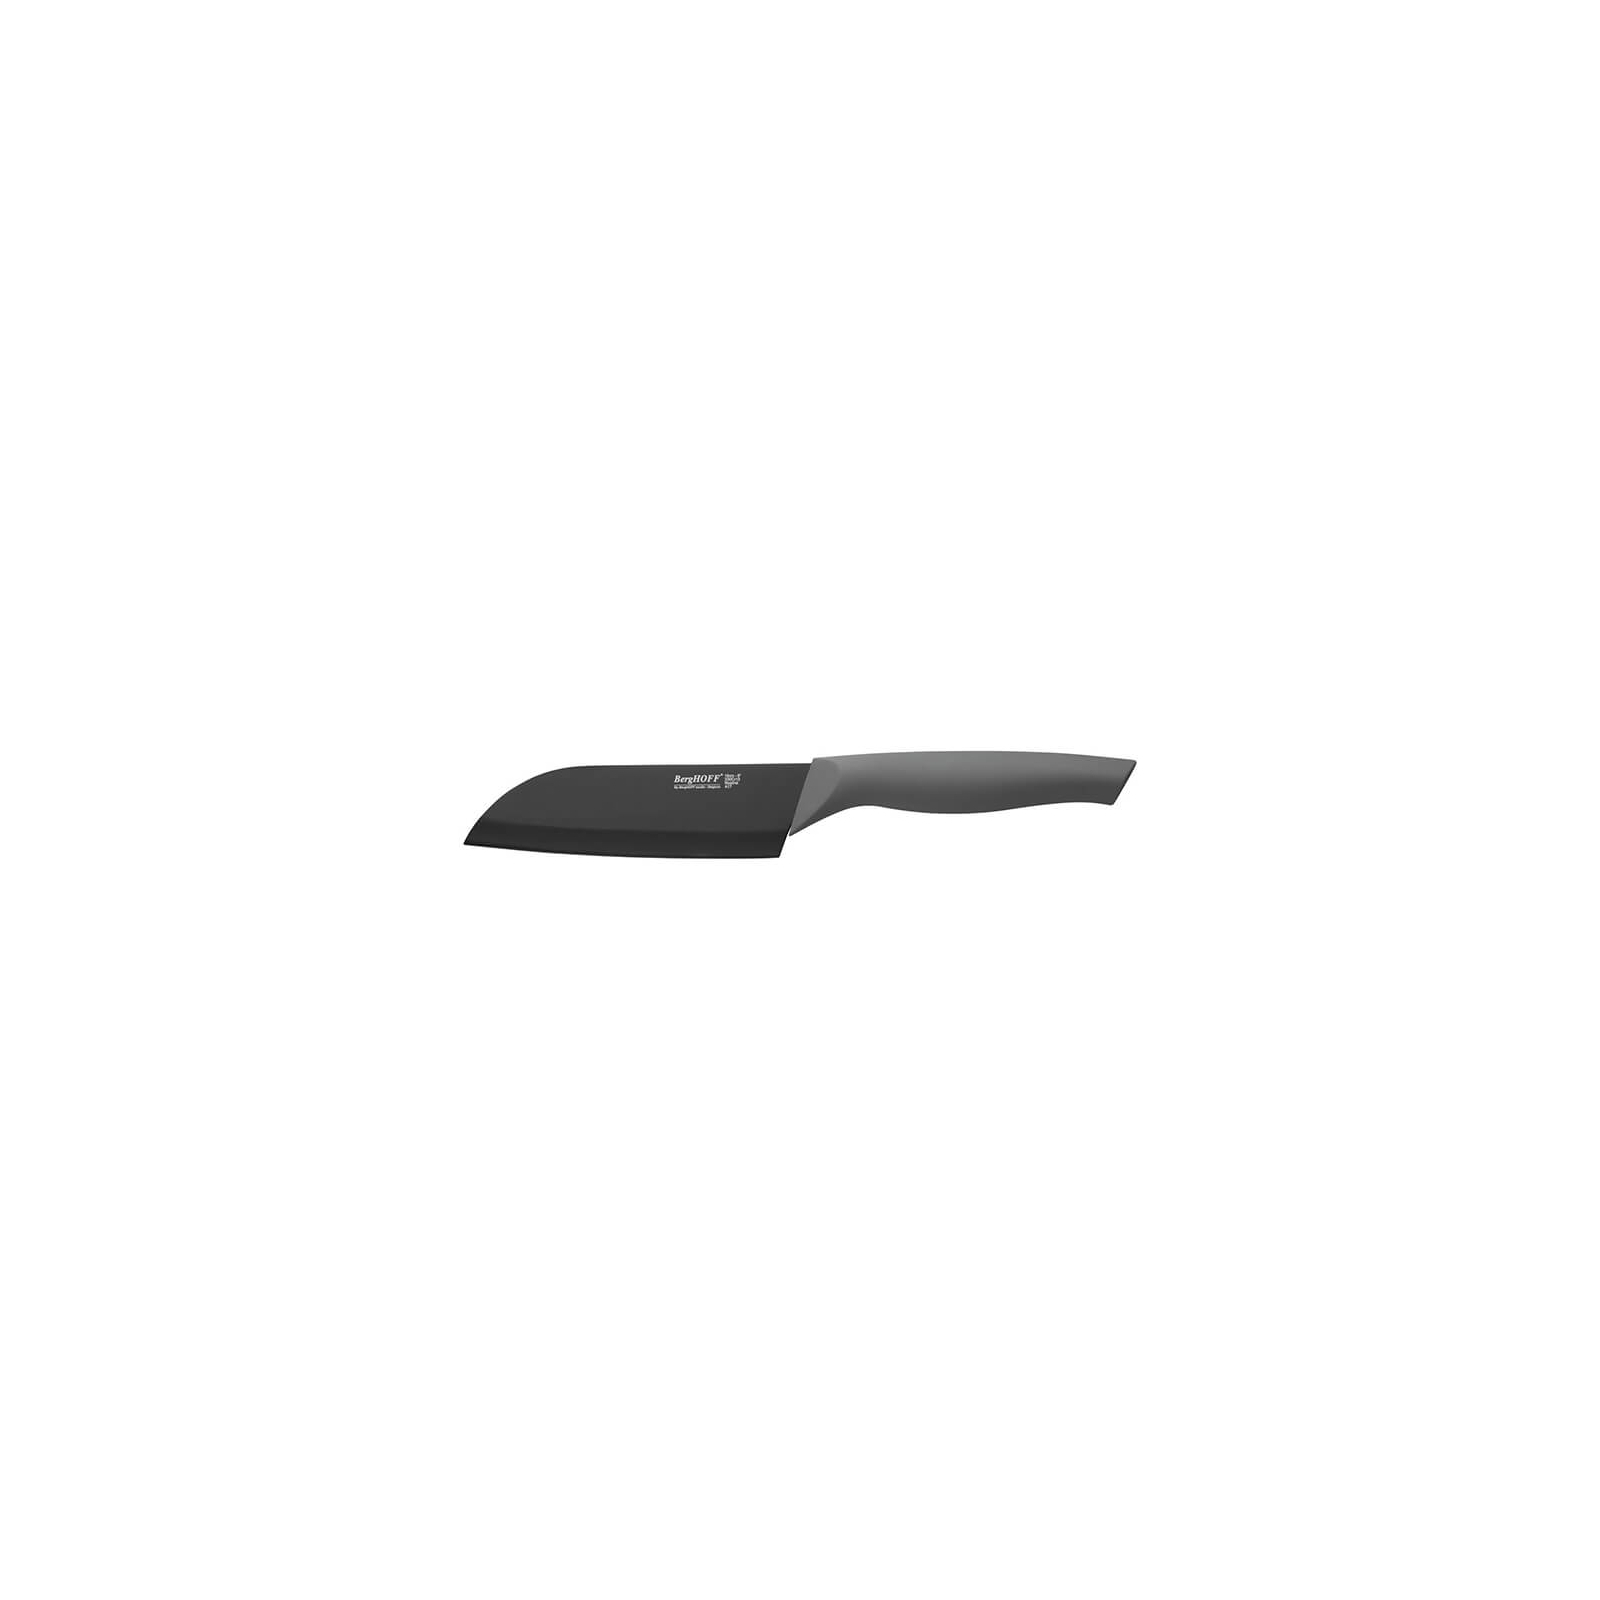 Кухонный нож BergHOFF Essentials Eclipse Santoku с покрытием 140 мм (1301048)